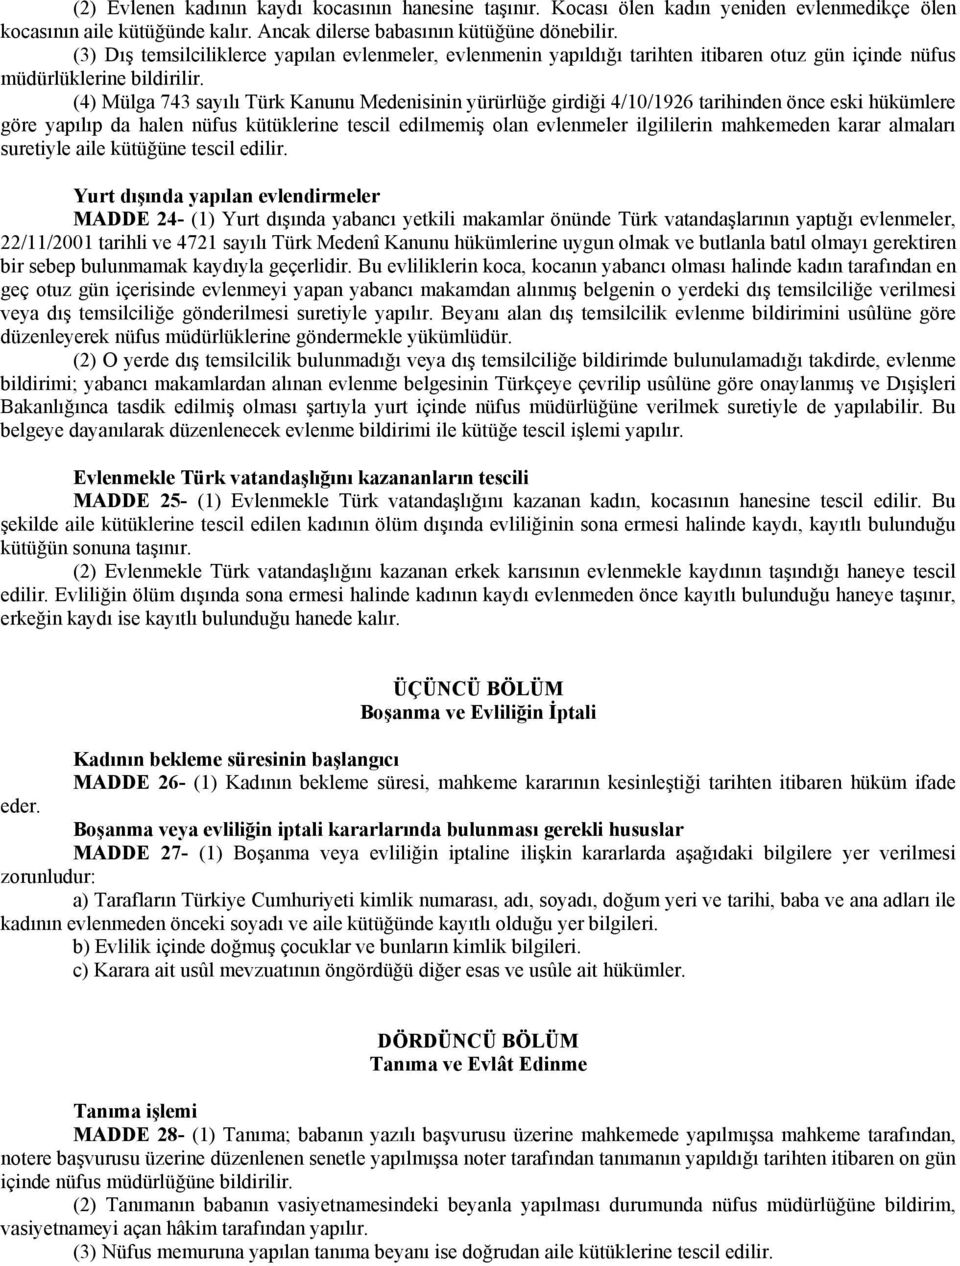 (4) Mülga 743 sayılı Türk Kanunu Medenisinin yürürlüğe girdiği 4/10/1926 tarihinden önce eski hükümlere göre yapılıp da halen nüfus kütüklerine tescil edilmemiş olan evlenmeler ilgililerin mahkemeden